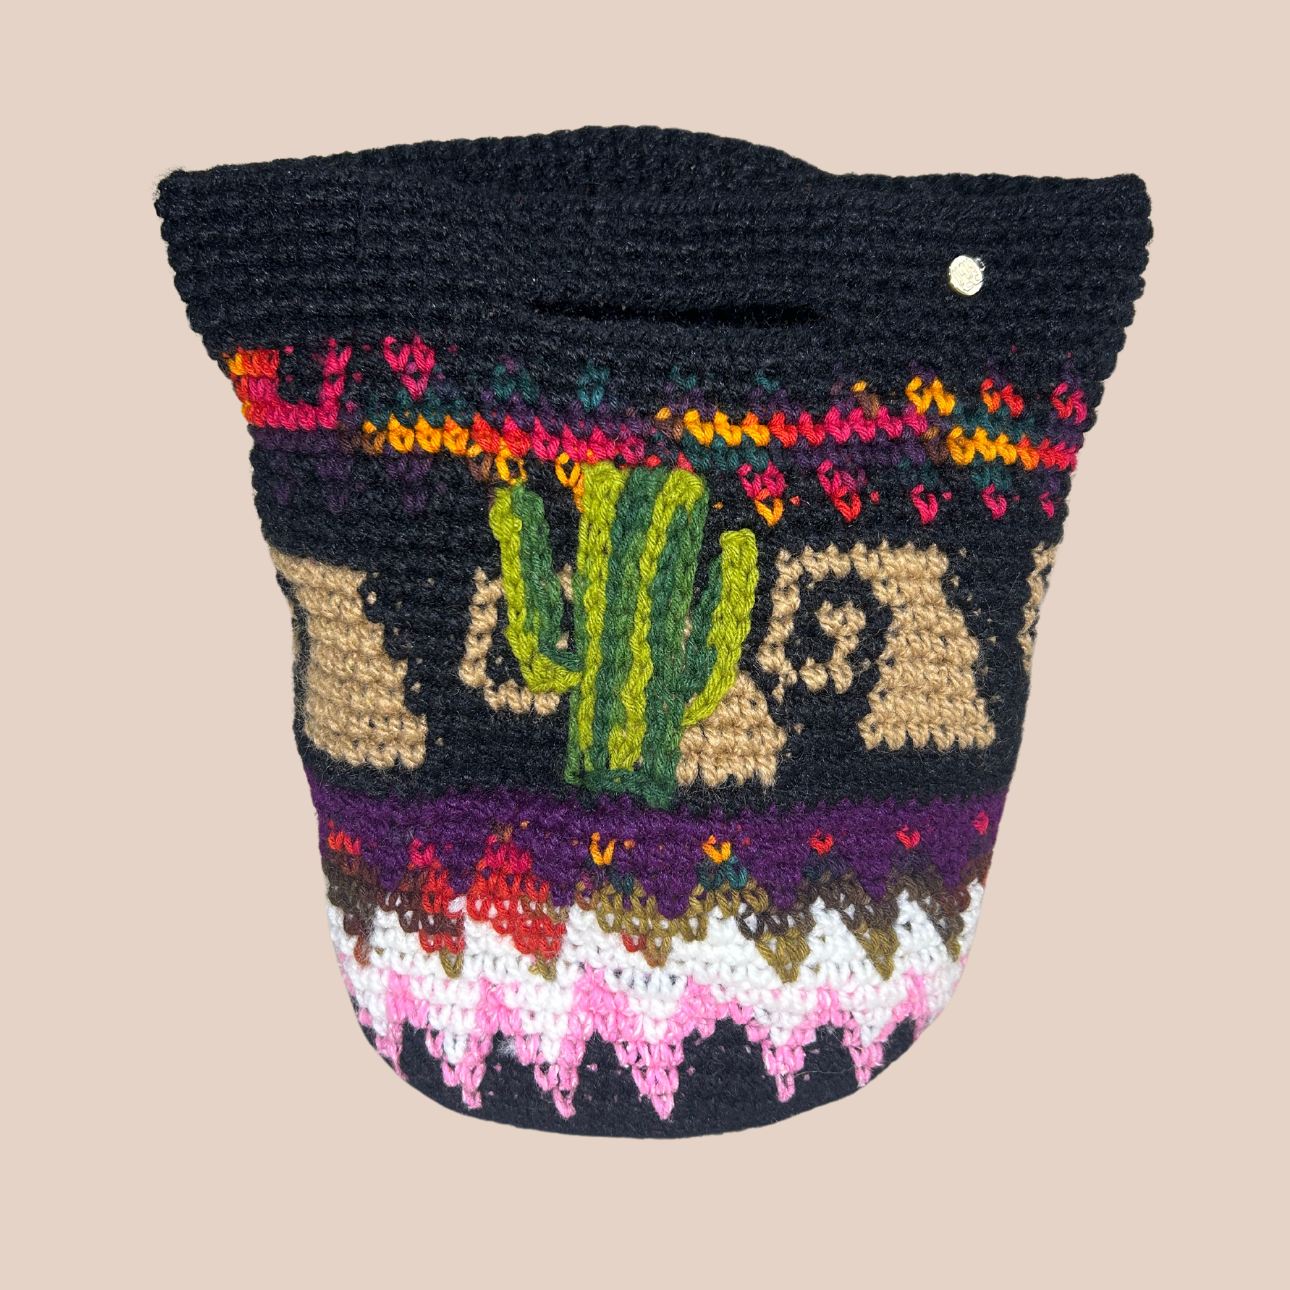 Image du sac Cactus de chez maison badigo, sac en laine crochetée multicolore